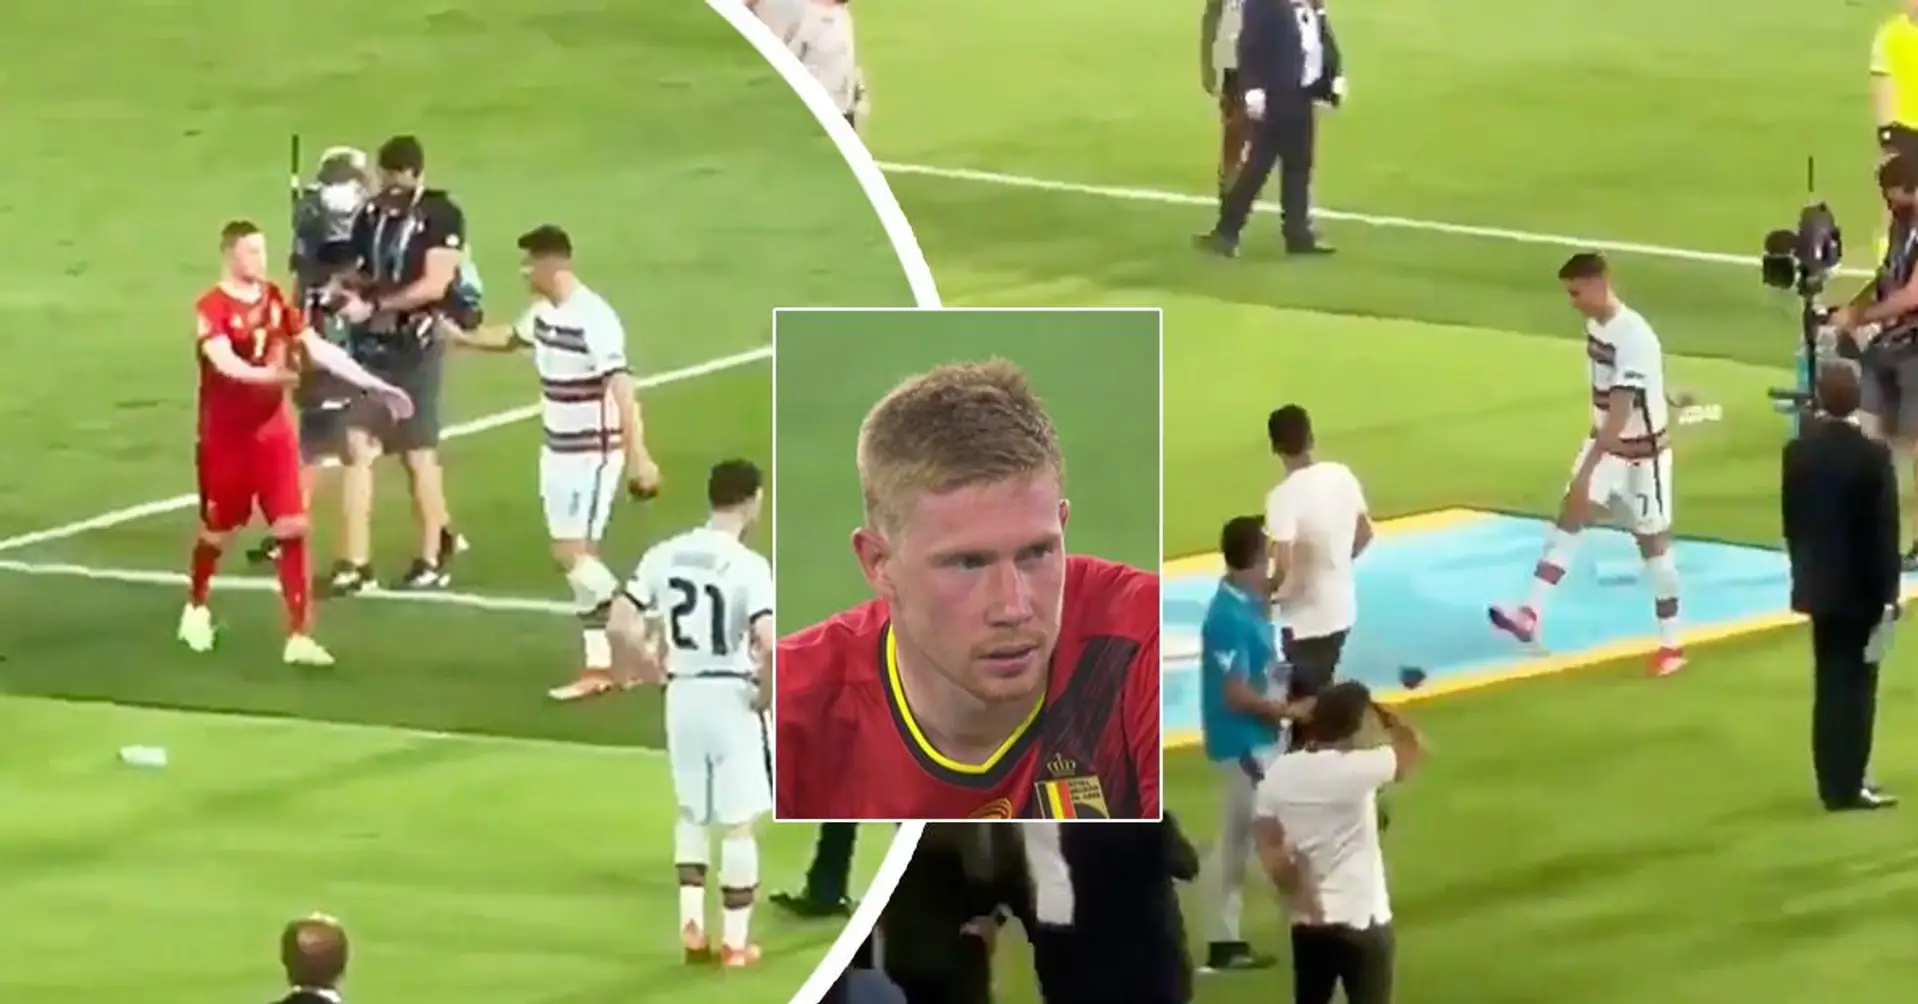 Catturato dalle telecamere: Cristiano arrabbiato prende a calci la fascia di capitano dopo la conversazione con De Bruyne